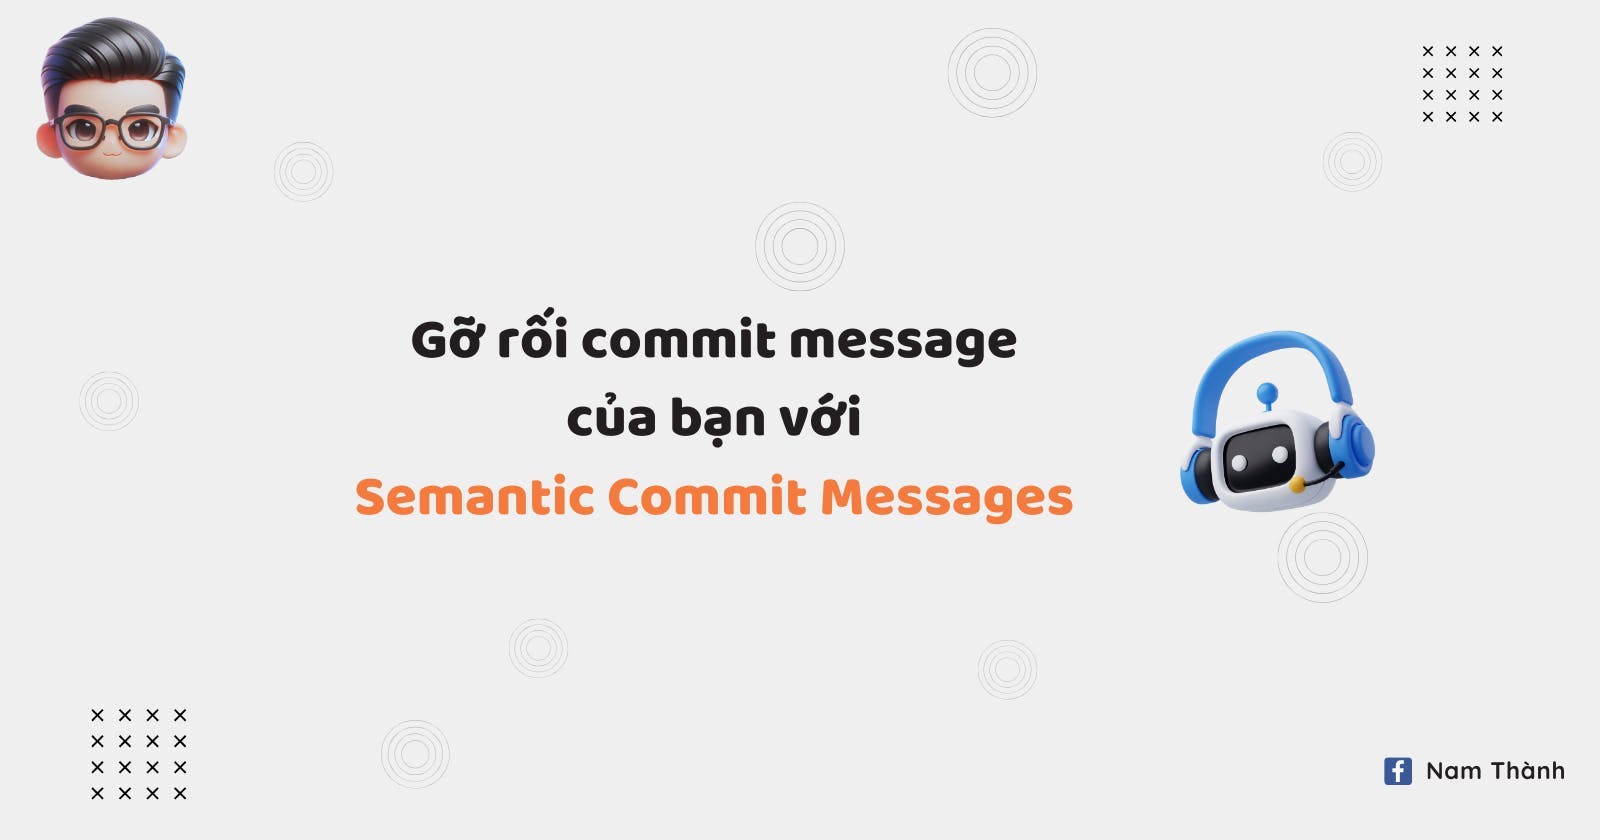 Semantic Commit Messages